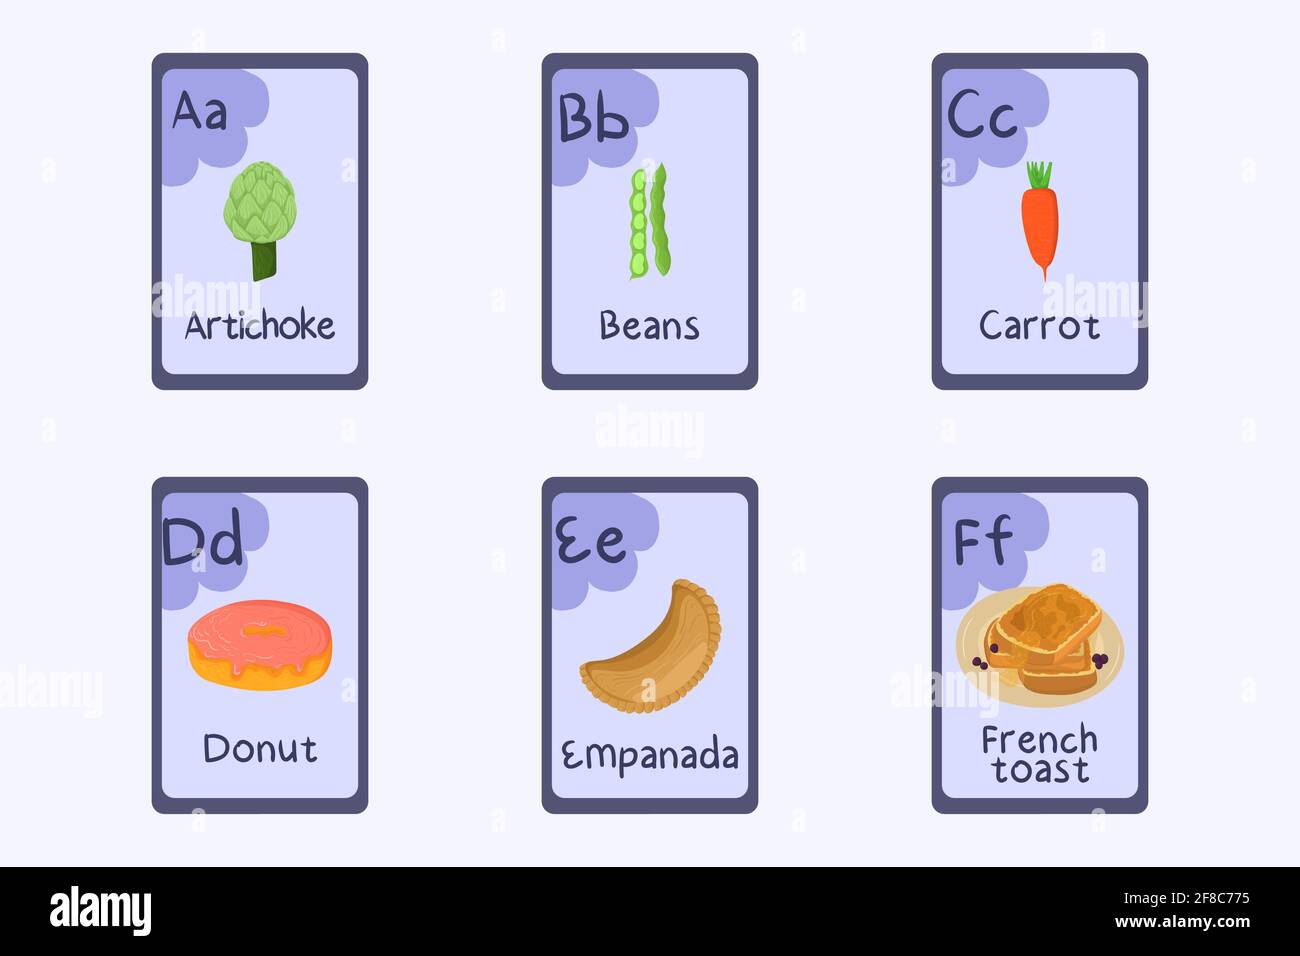 Flashcard alphabet coloré lettre A, B, C, D, E, F - artichaut, haricots, carottes, beignets, empanada, pain grillé. Illustration de Vecteur